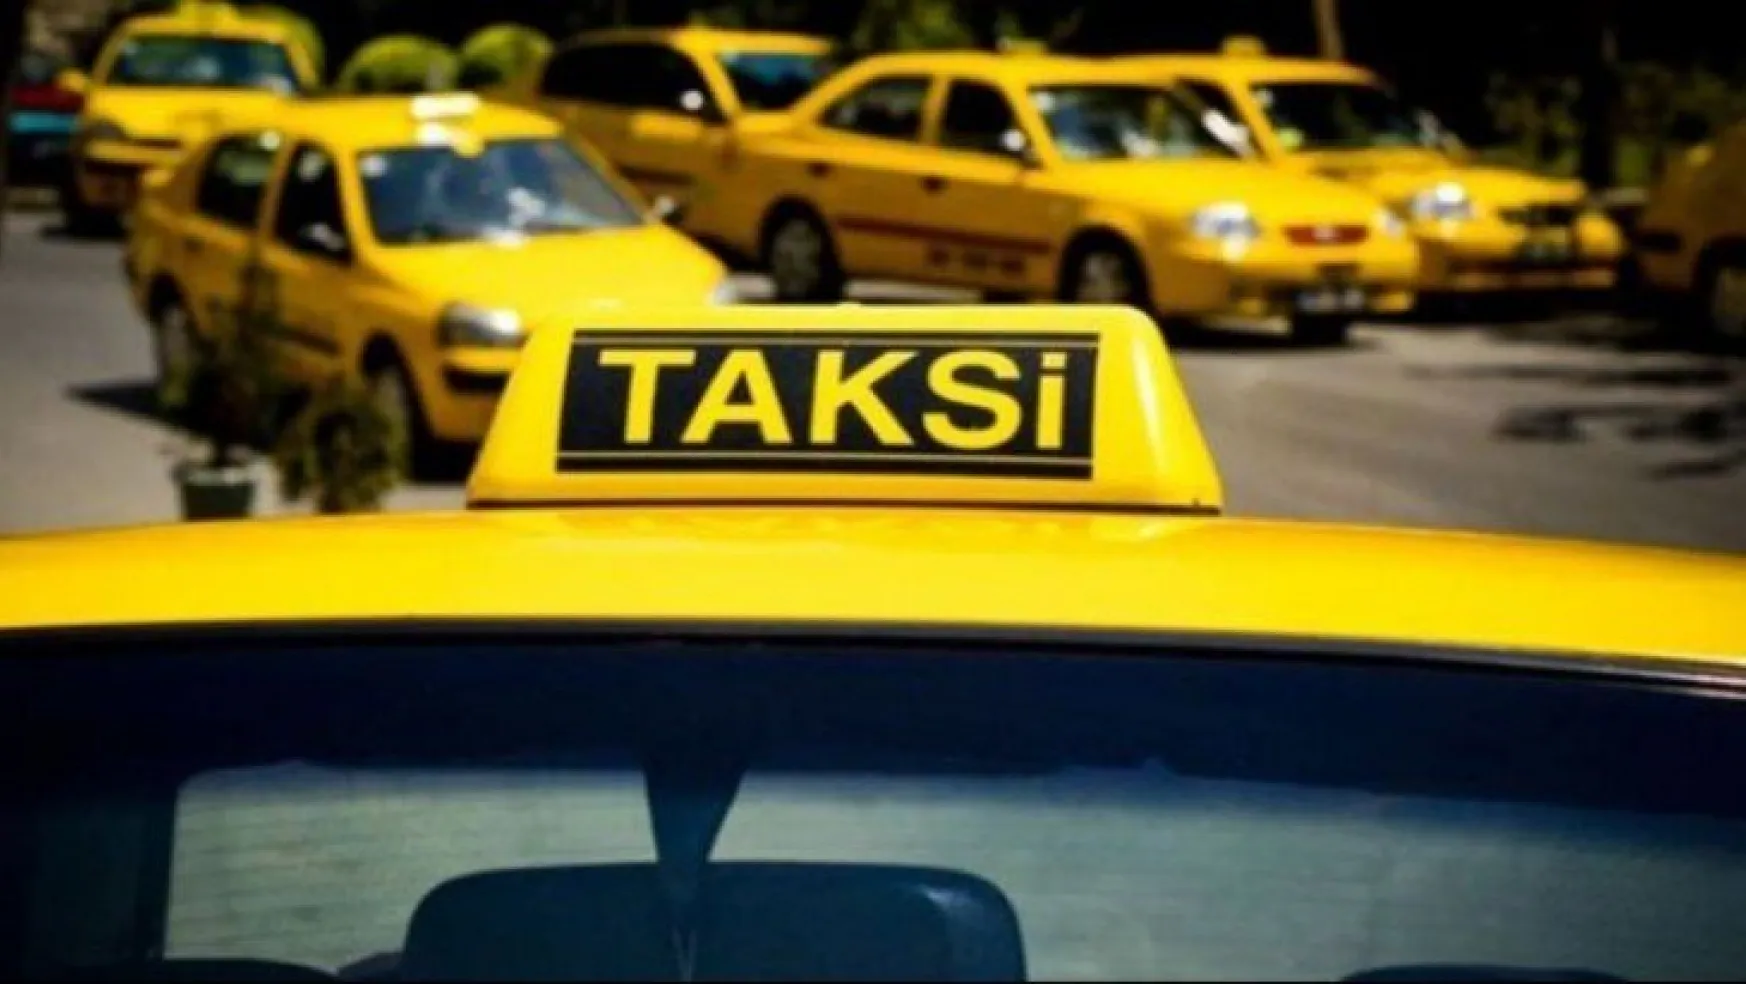 Bakanlıktan 81 ile taksi genelgesi